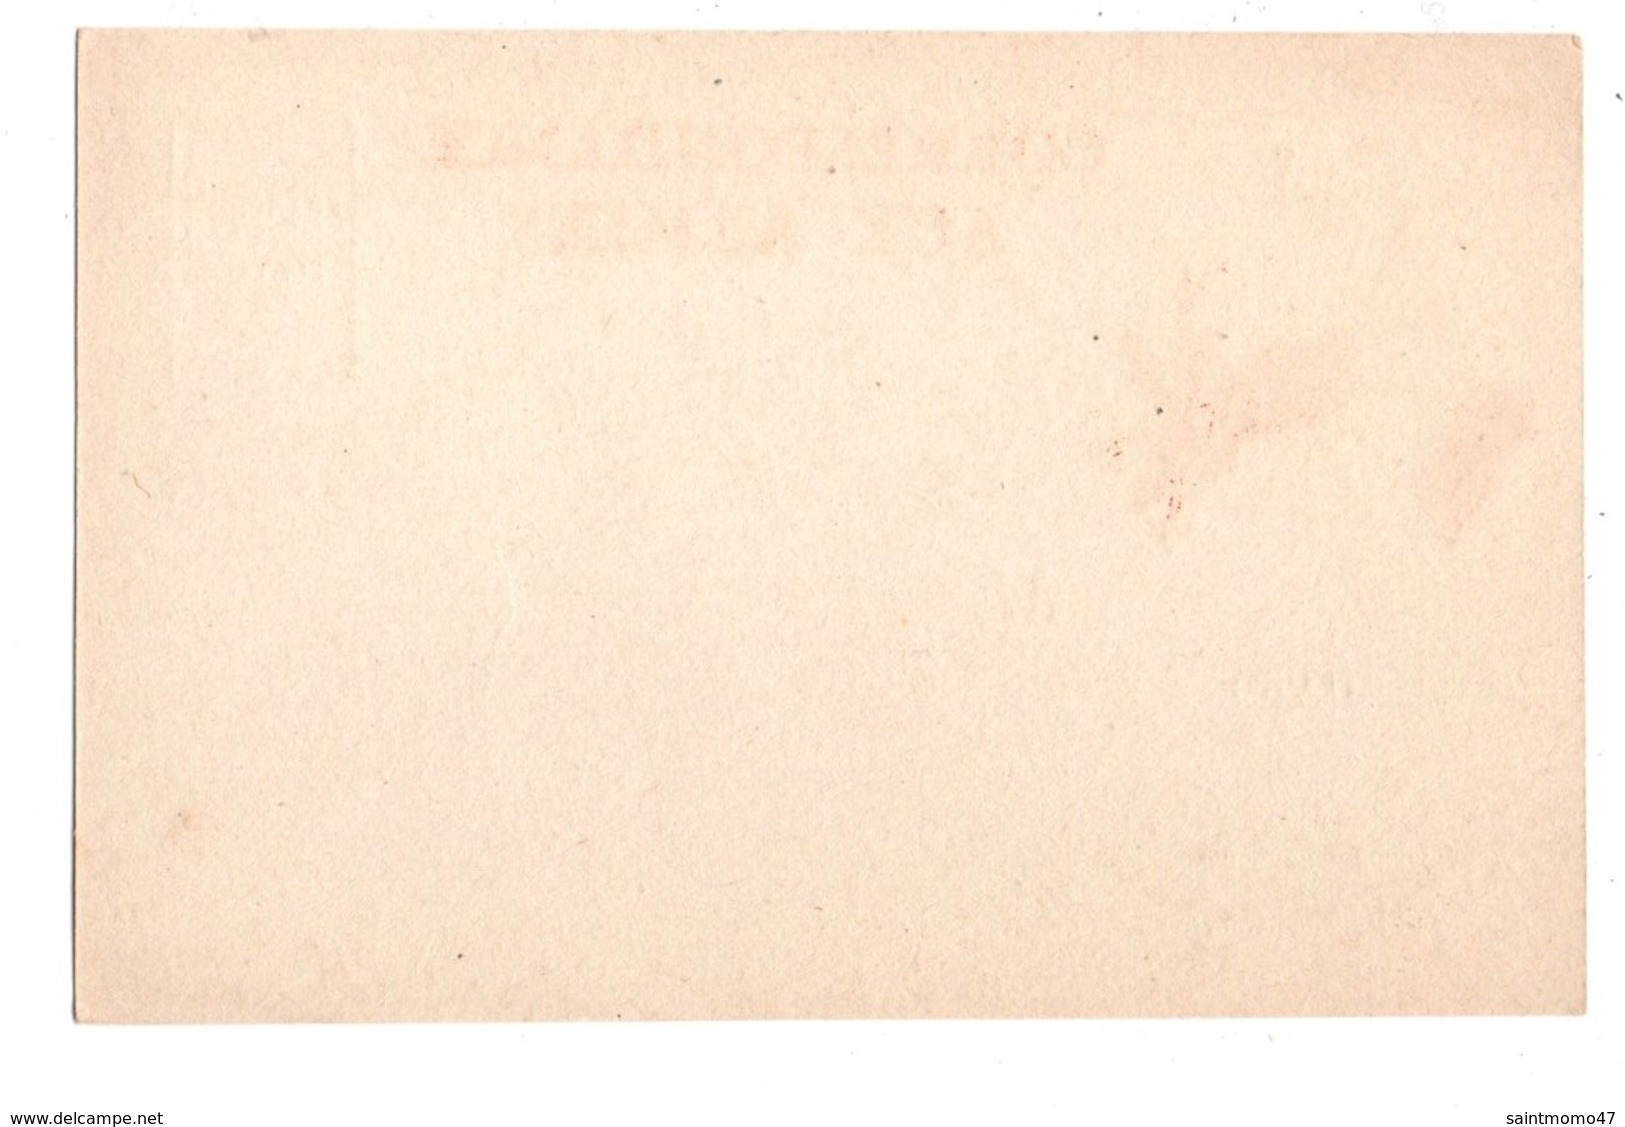 Correspondance Aux Armées. Carte En Franchise.Postale . Non Utilisée - Réf. N°2096 - - Lettres & Documents